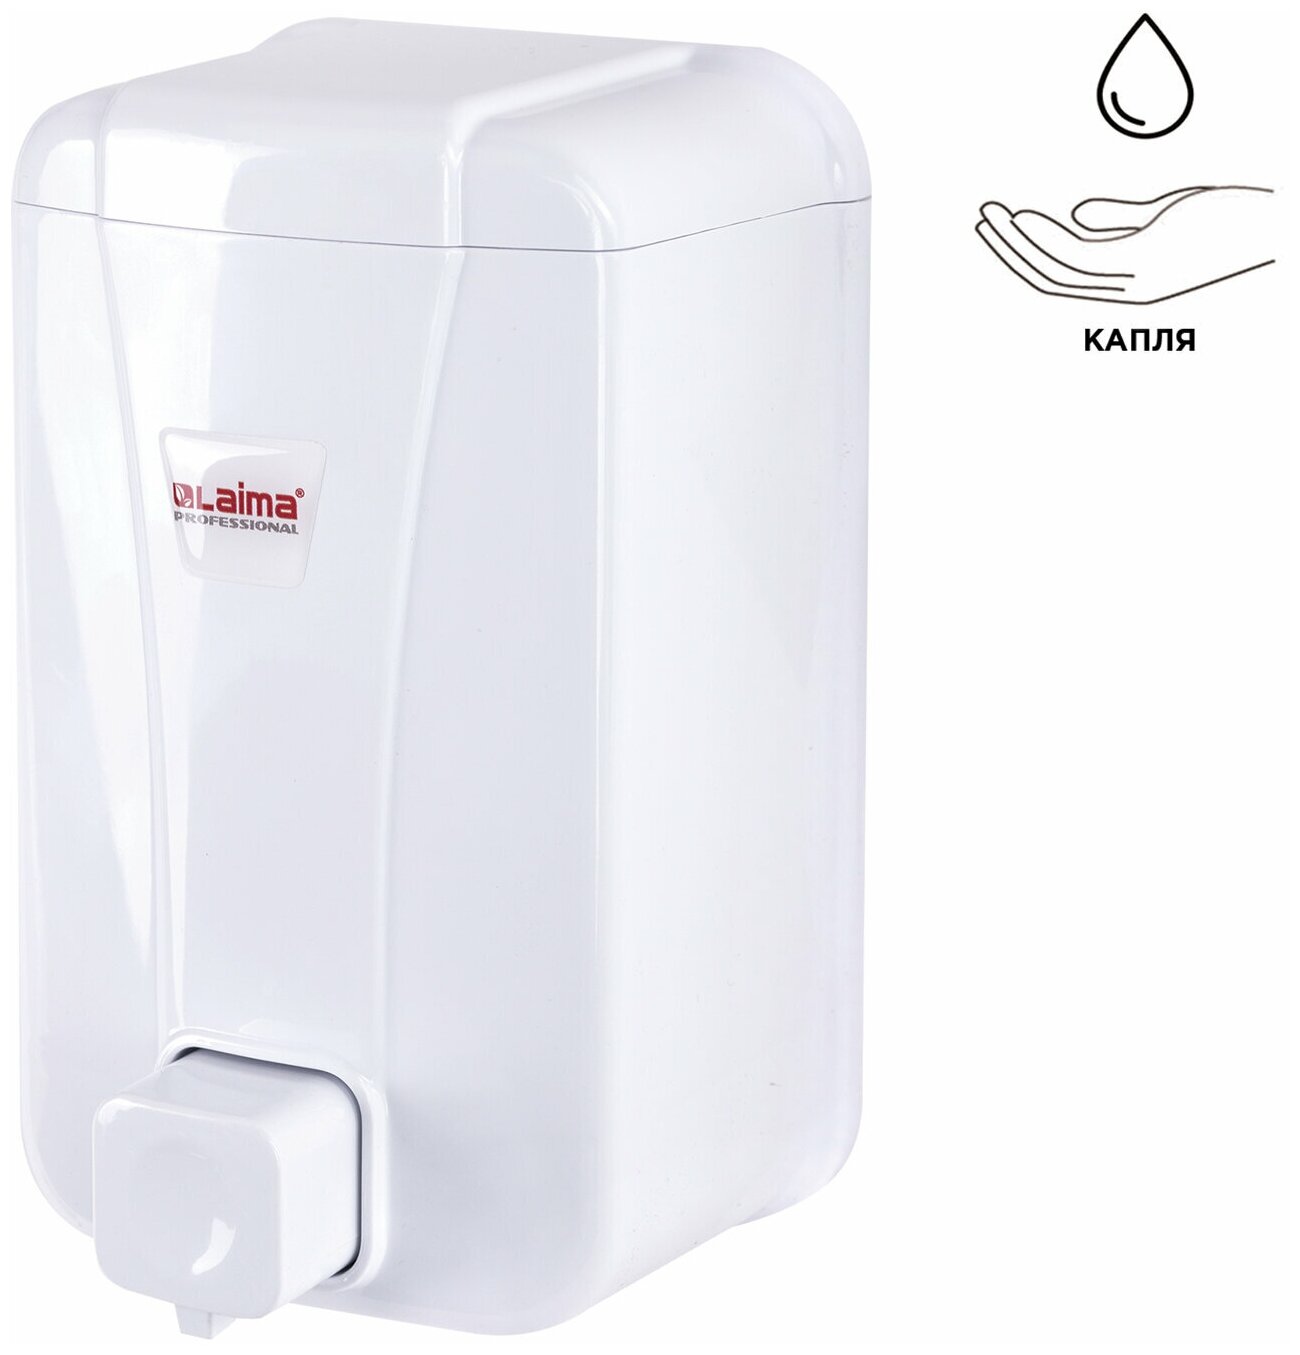 Комплект 2 шт Диспенсер для жидкого мыла LAIMA PROFESSIONAL LSA наливной 1 л белый ABS-пластик 607995 3430-0